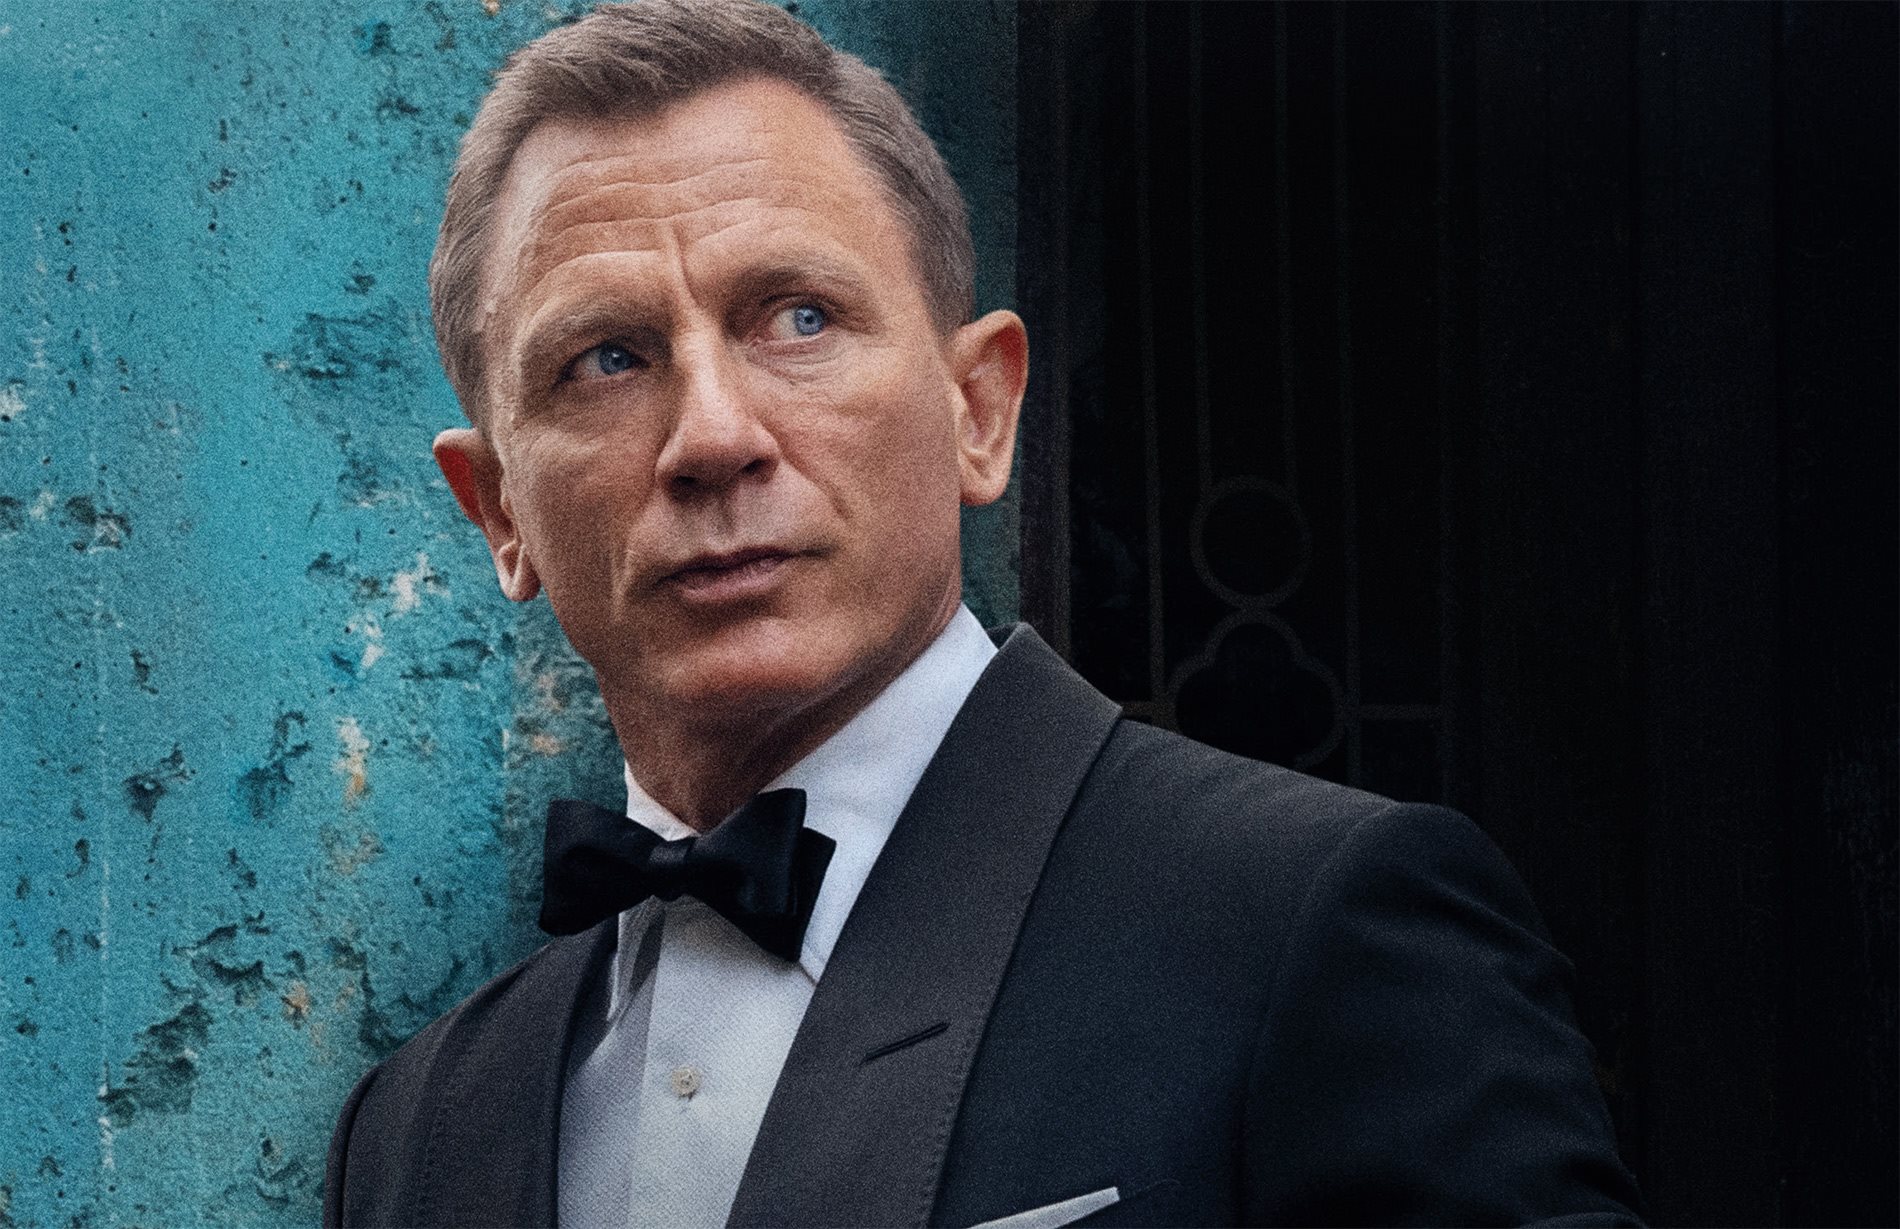 James Bond The secret to being Bond Heineken